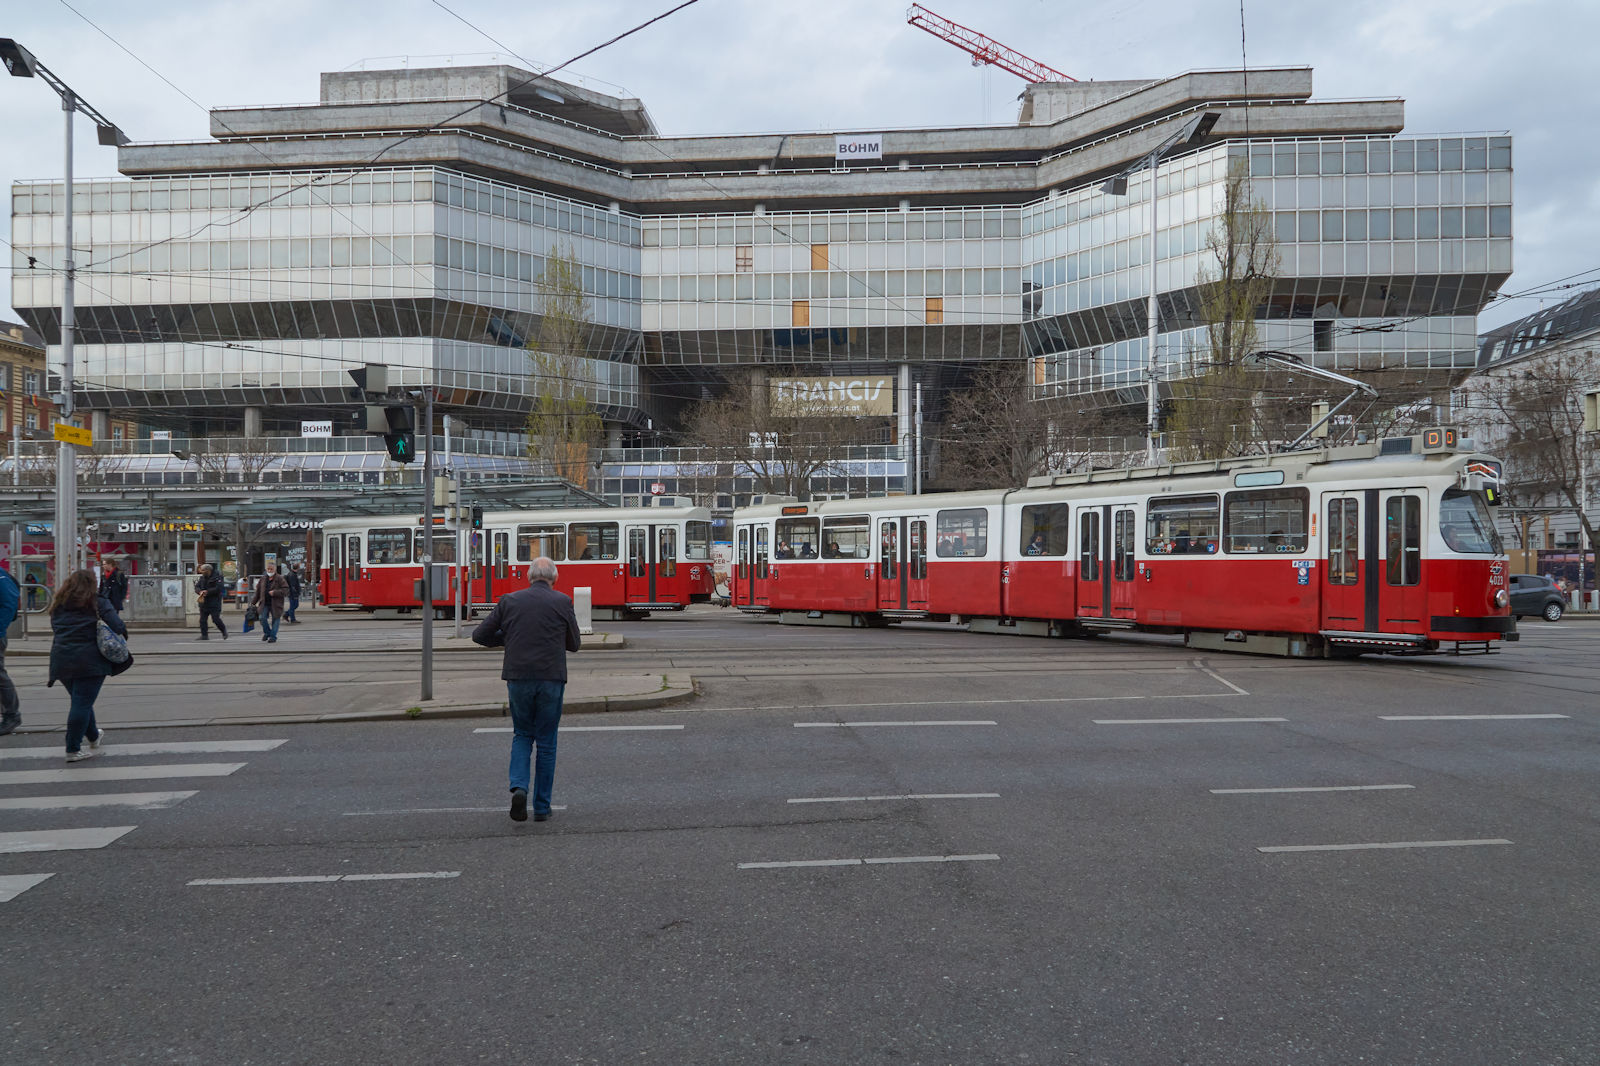 1978 wurde der neue Franz-Josephs-Bahnhof in Wien fertiggestellt und 1979 wurde E2 4023 an die Wiener Straßenbahn geliefert. Am 08.04.2022 verließ der E2 mit c5 1423 die Straßenbahnhaltestelle, welche sich unmittelbar vor dem Bahnhof befindet, in Richtung Ring und Favoriten. Der Bahnhof war zu diesem Zeitpunkt in einem schlechten Zustand und wird umfassend modernisiert.